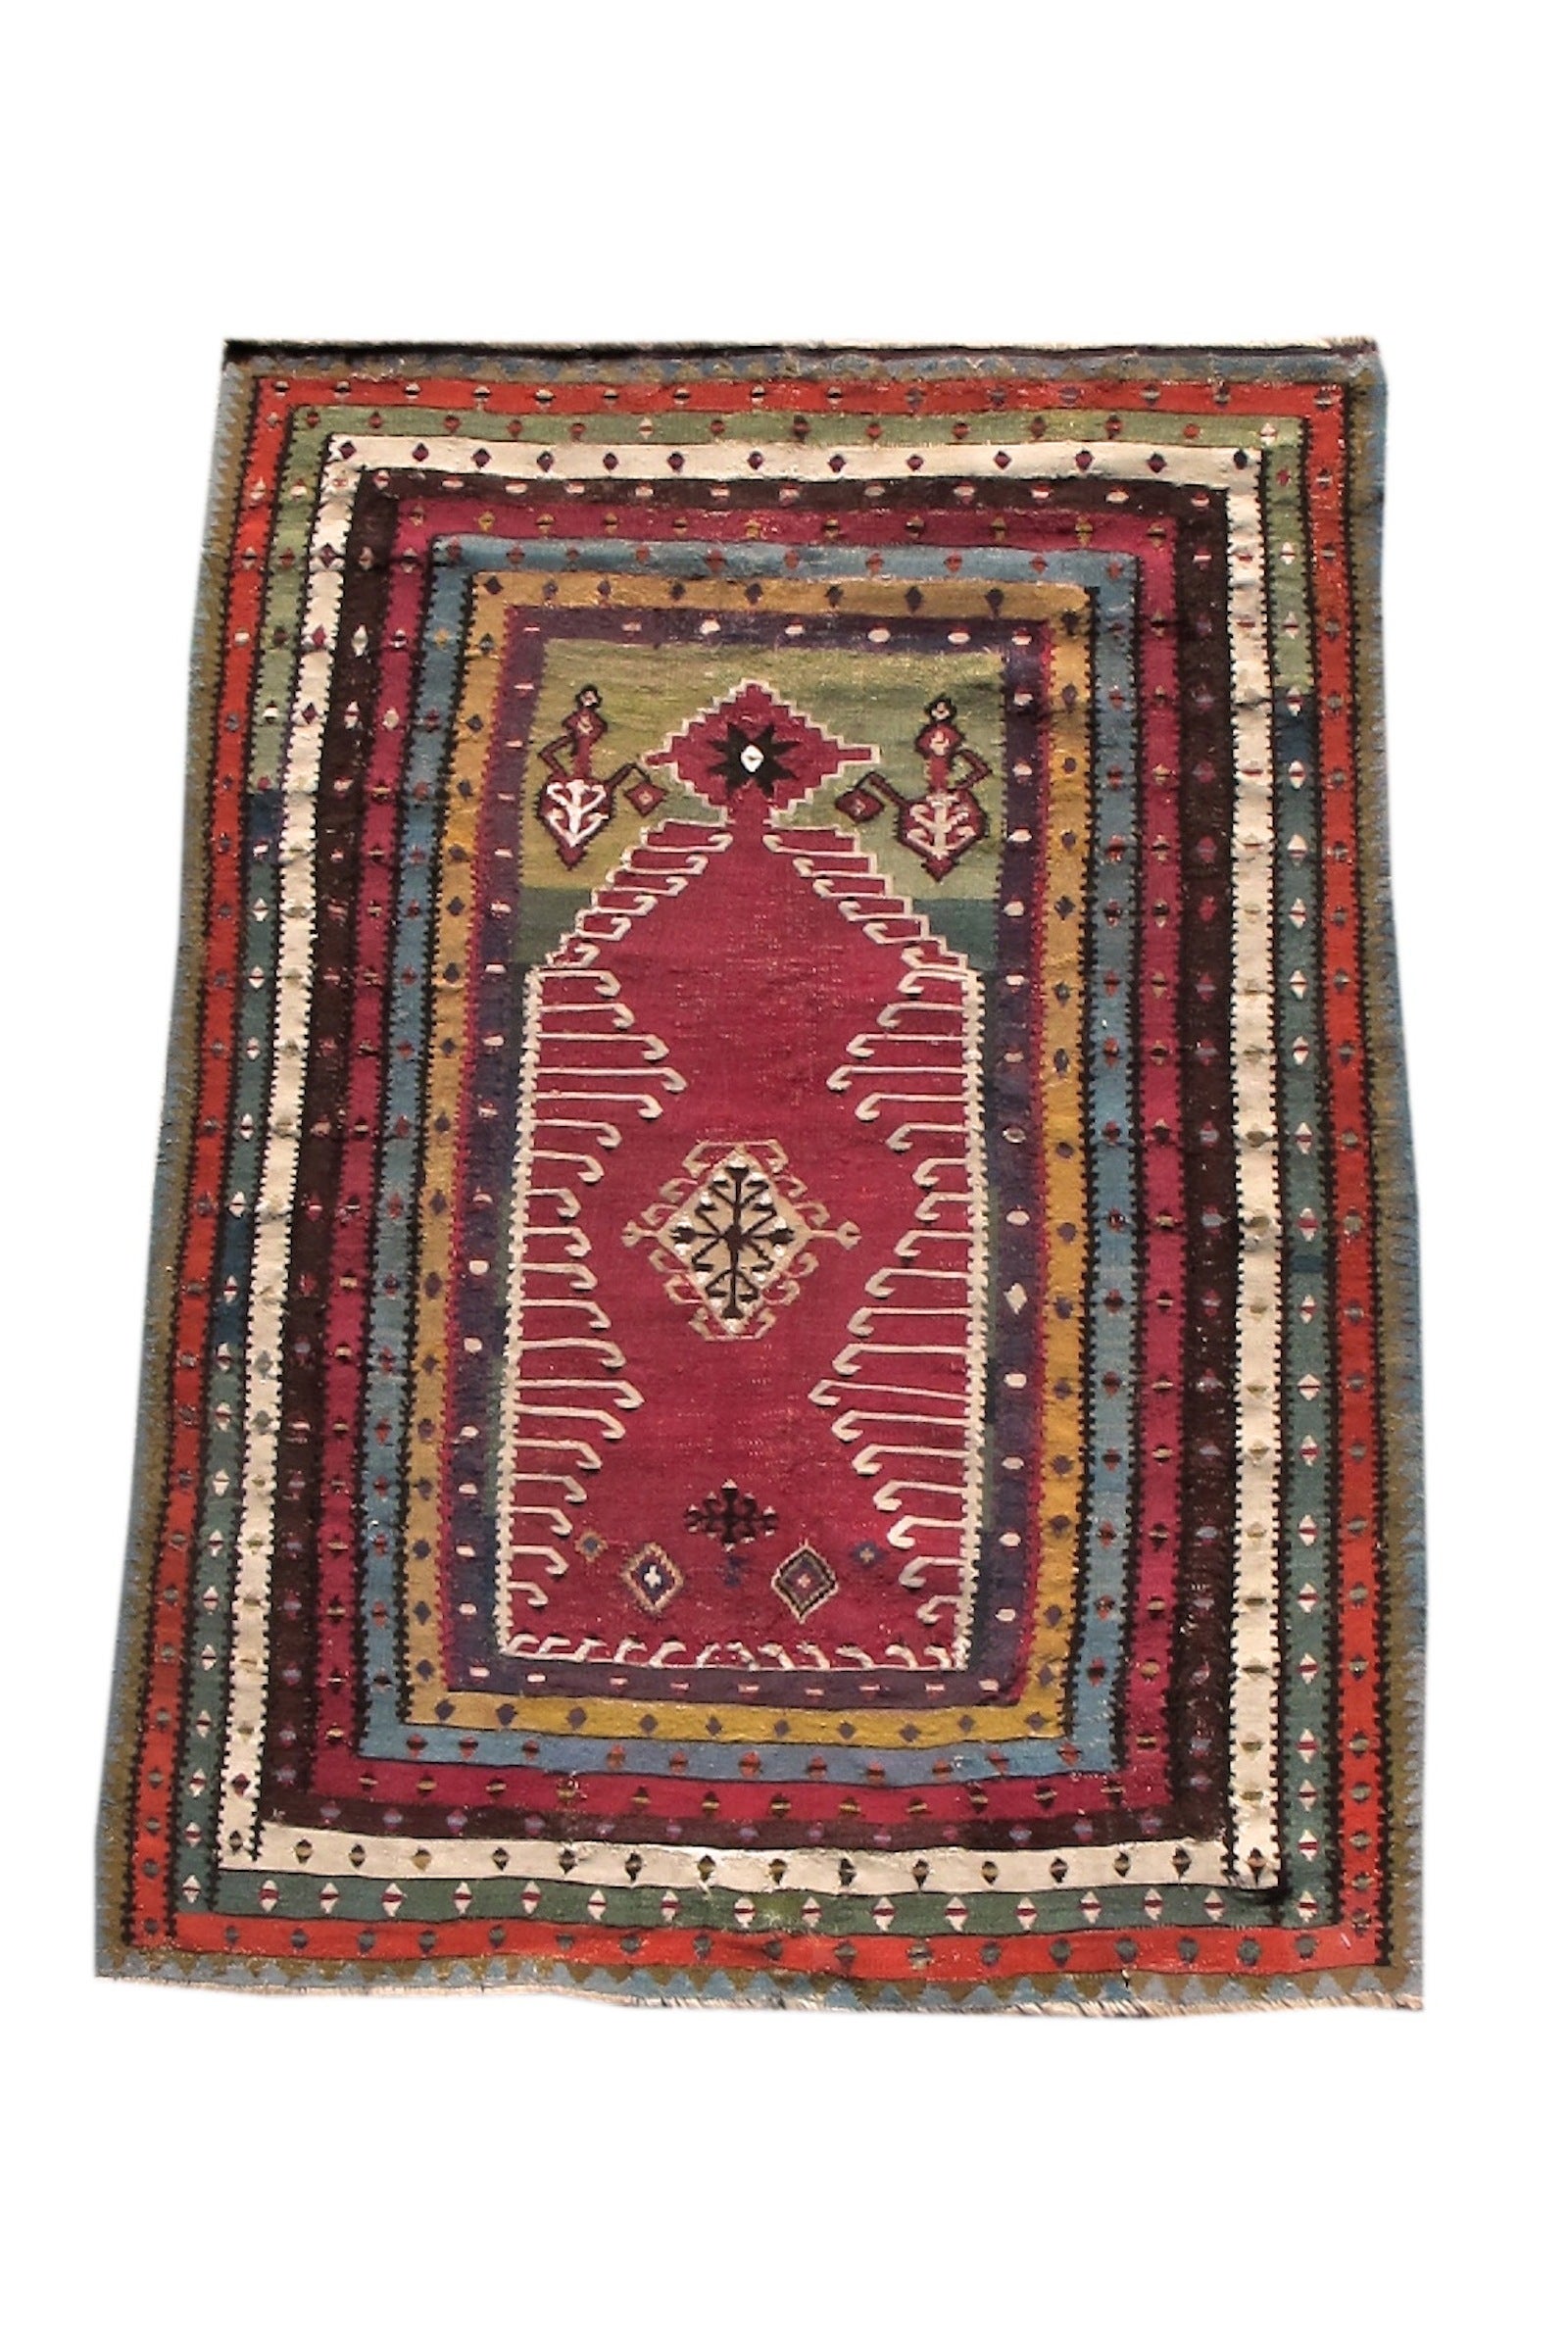 Mid 19th Century Vibrant Multi-Colored Turkish Reyhanli Kilim Rug